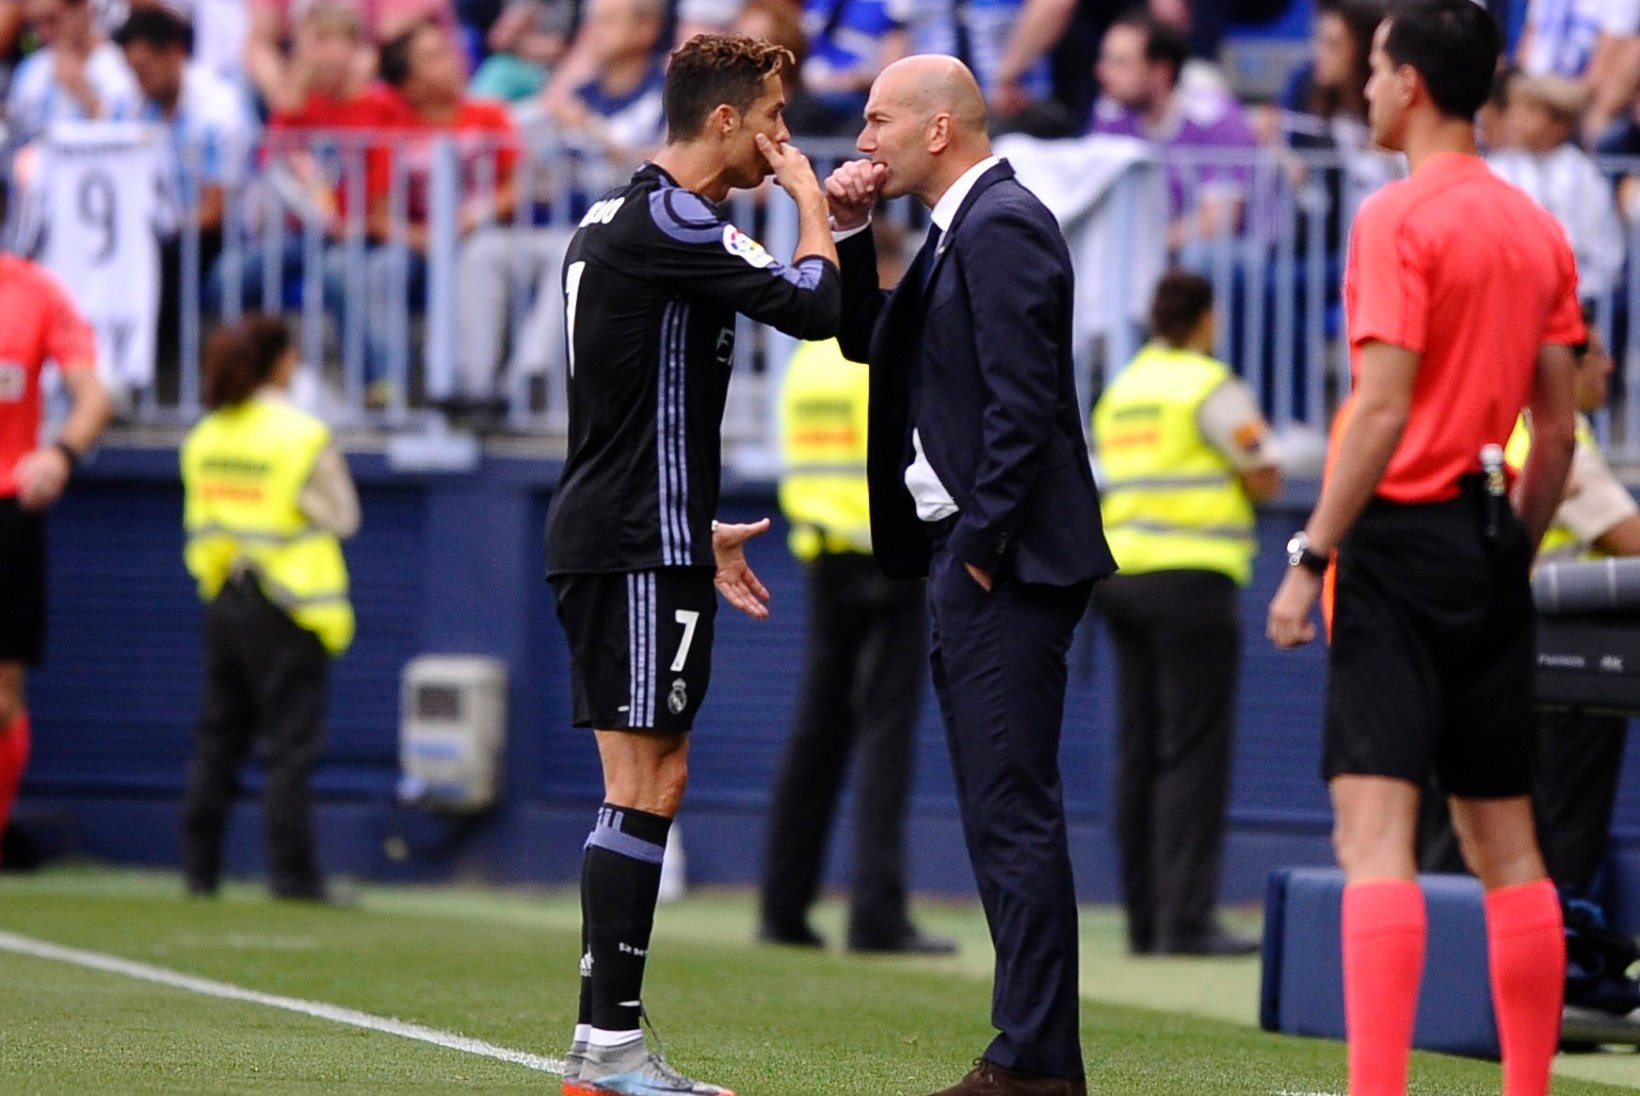 GALERII | Imeline Zidane tõi tiitli taas Realile, Ronaldo jätkab hullu seeriat